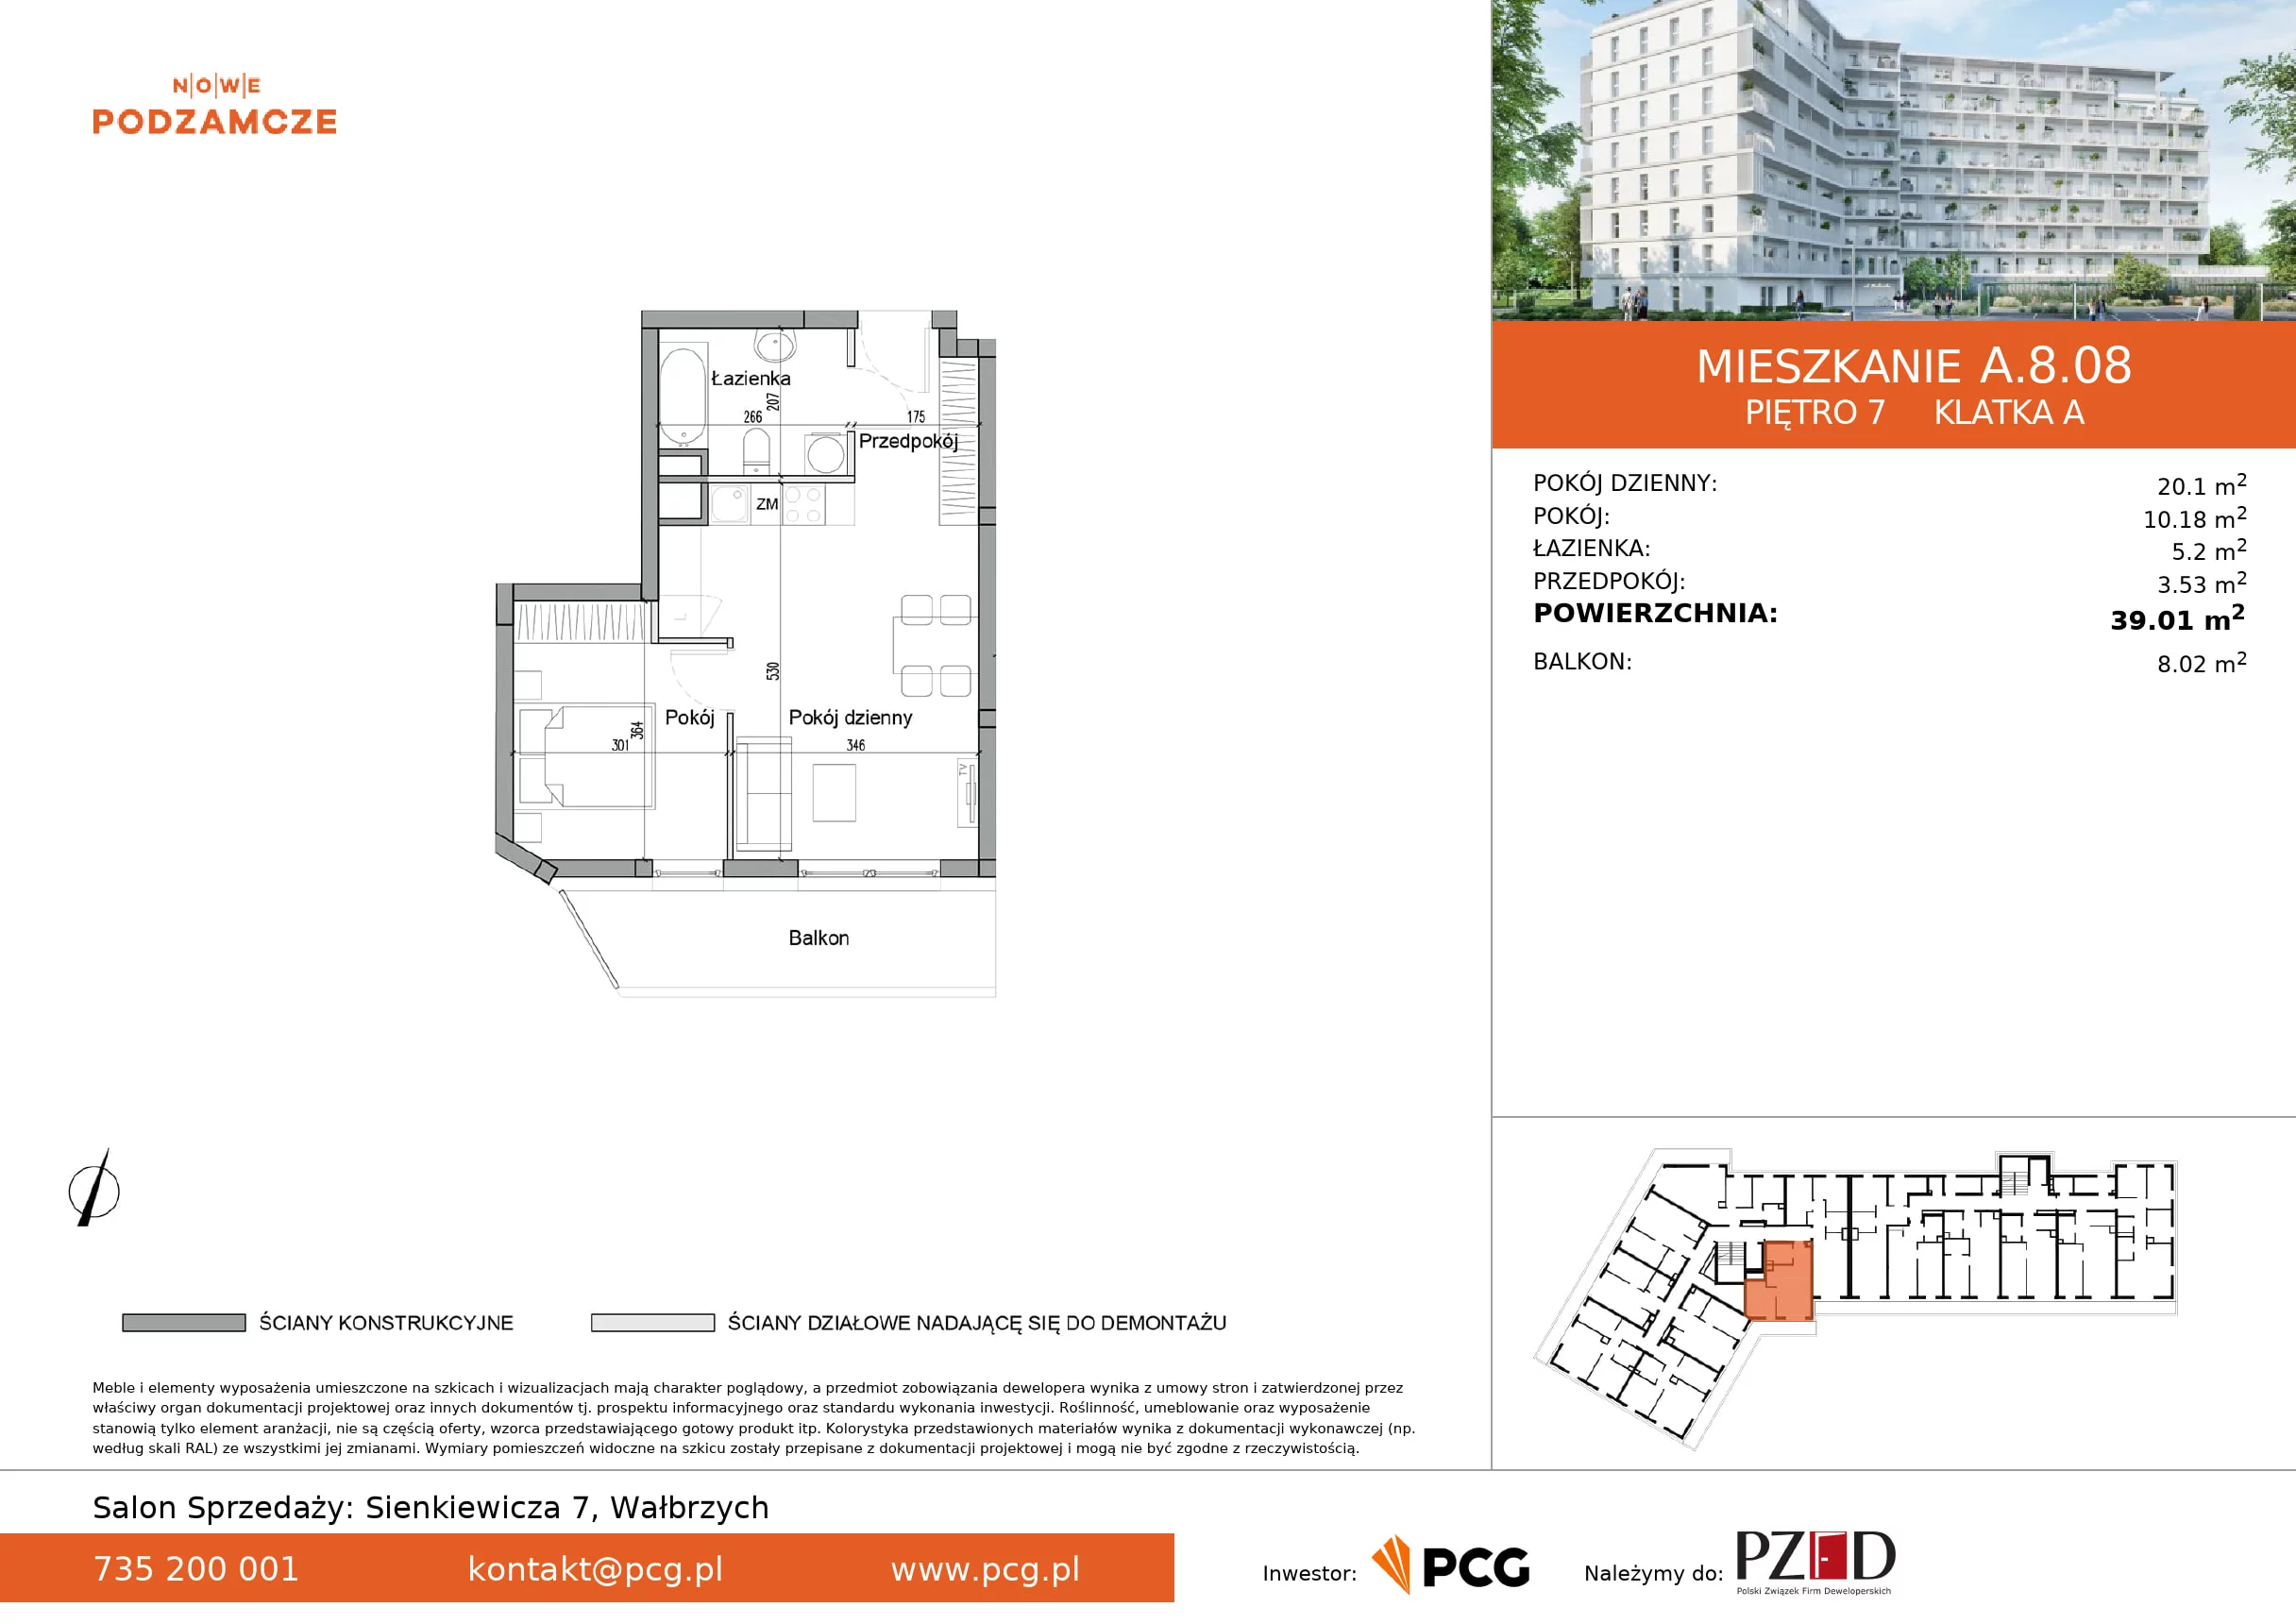 Mieszkanie 39,01 m², piętro 7, oferta nr A.8.08, Nowe Podzamcze, Wałbrzych, al. Podwale 2, 4